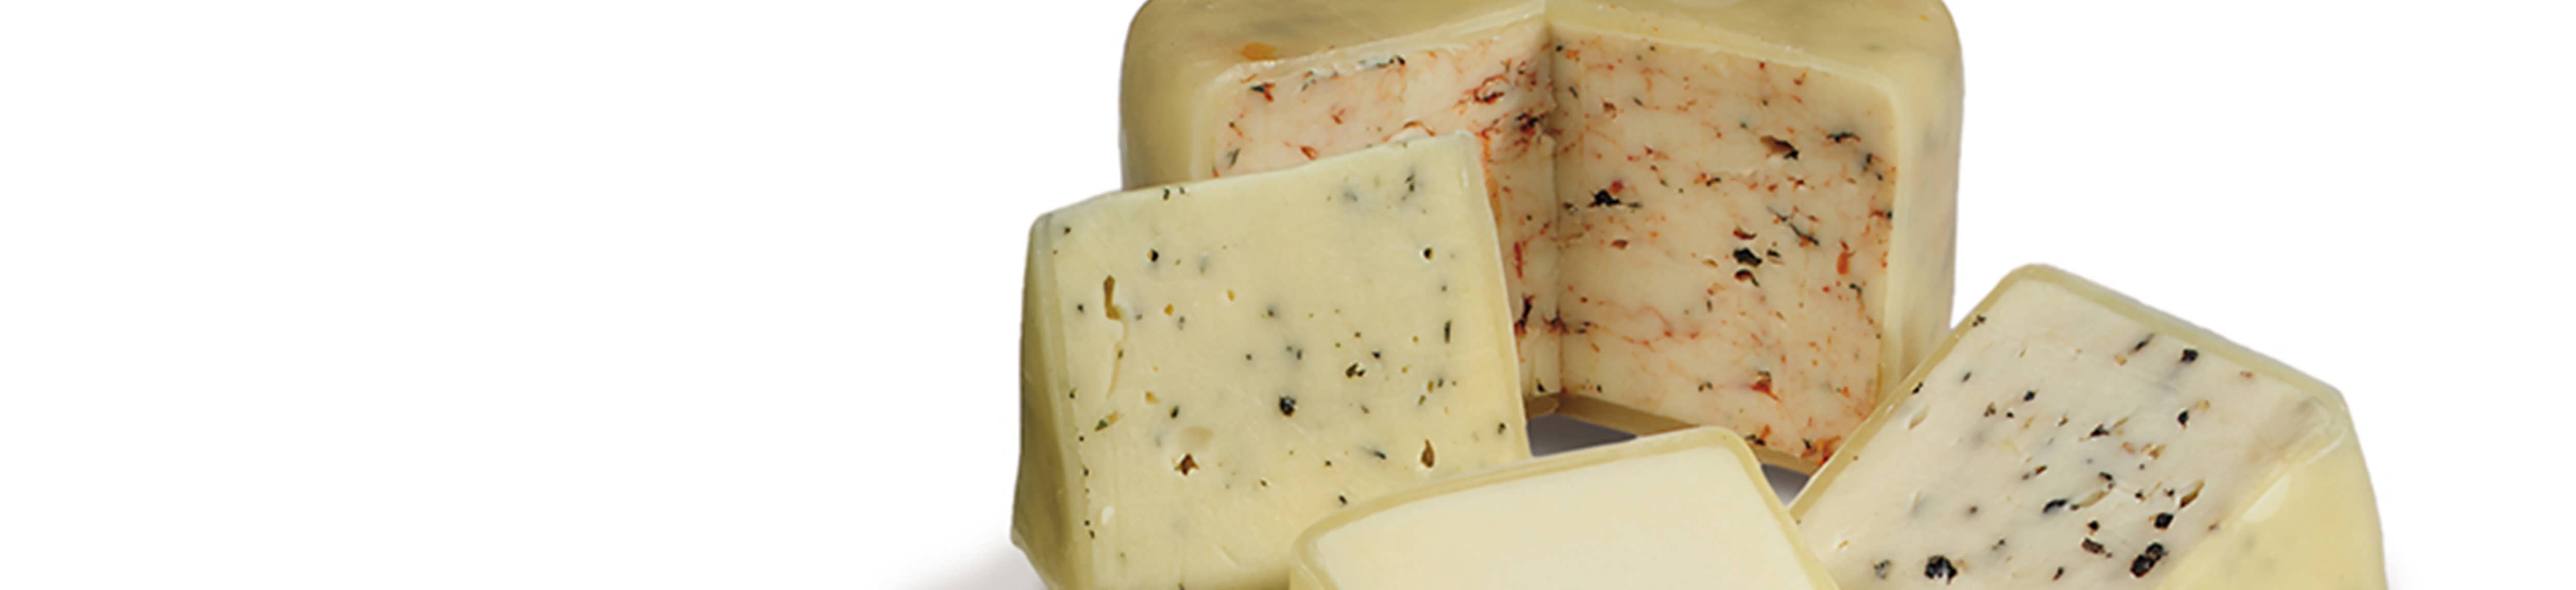 Semi Soft Cheese: Mozzarella Company